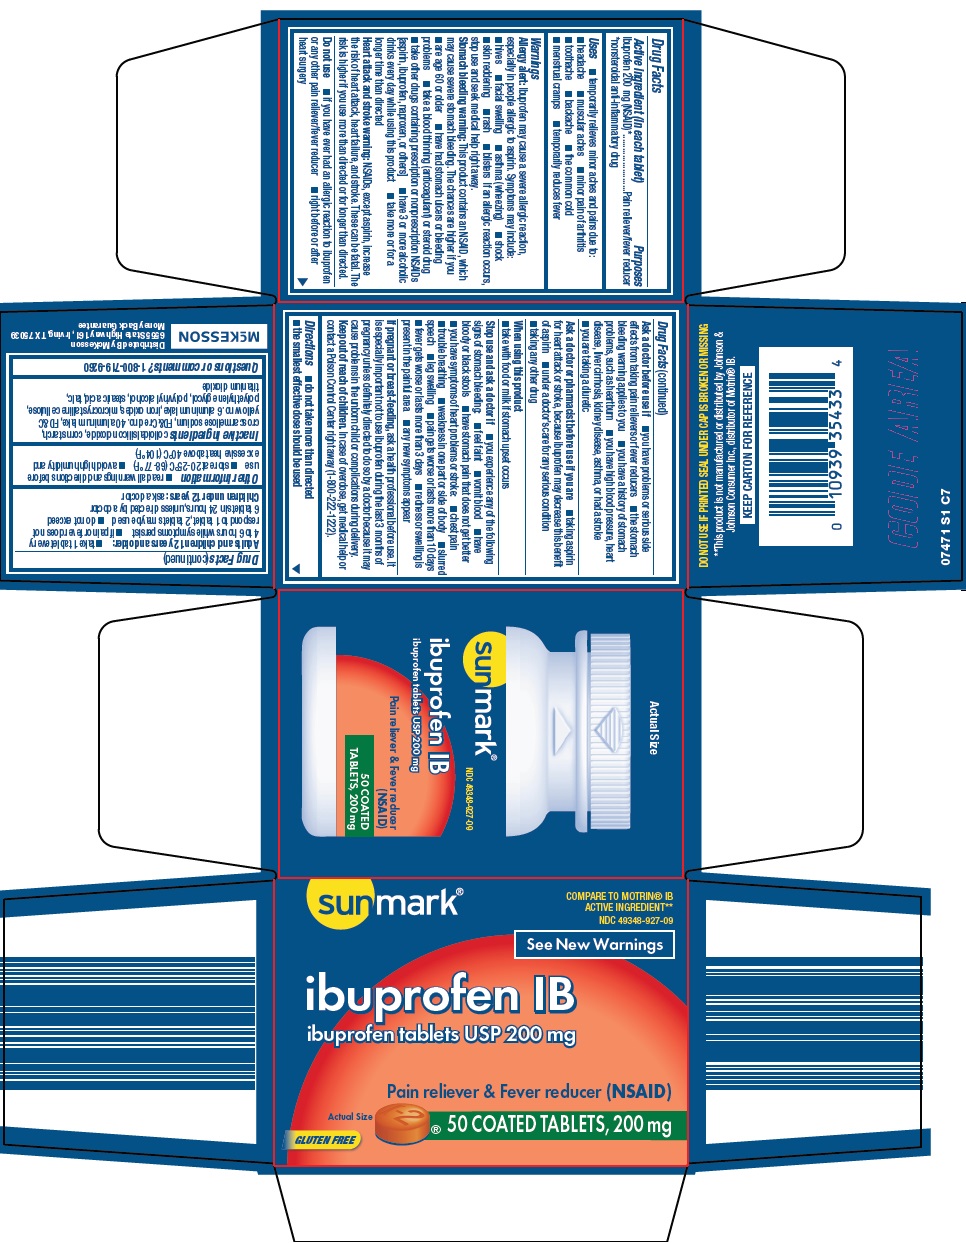 074-s1-ibuprofen-ib.jpg